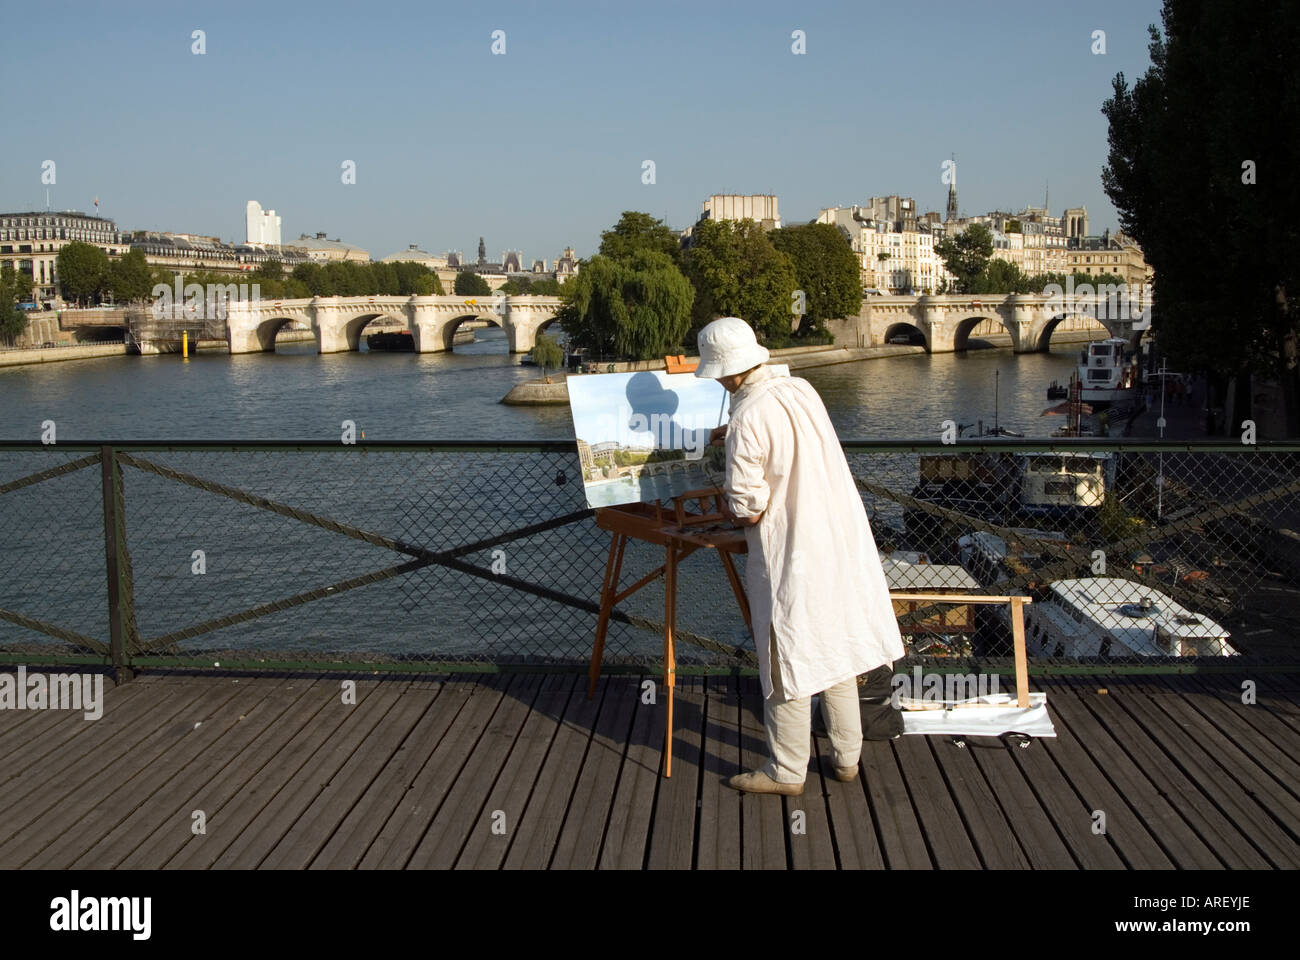 La peinture de l'artiste une vue panoramique sur la Seine du Pont des Arts, Paris, France Banque D'Images